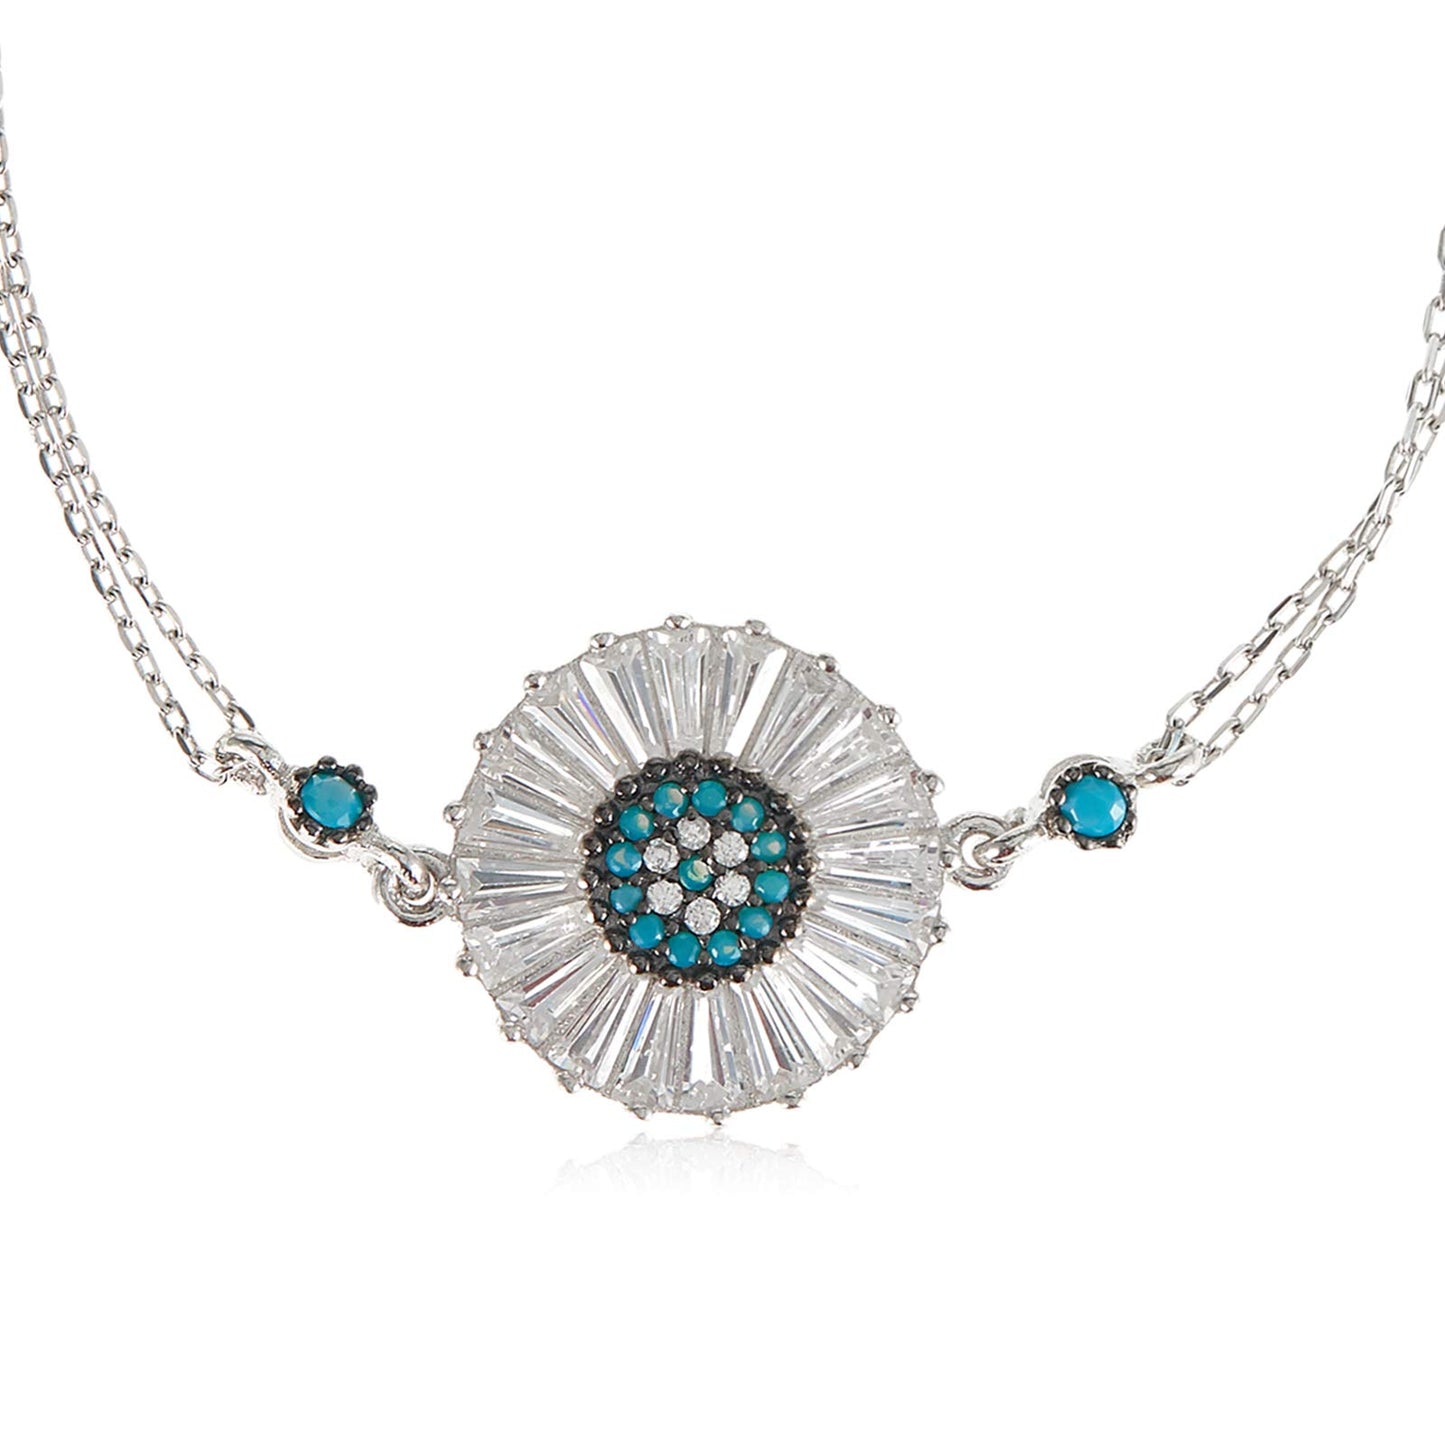 Alwan Silver Bracelet for Women - EE5317BS